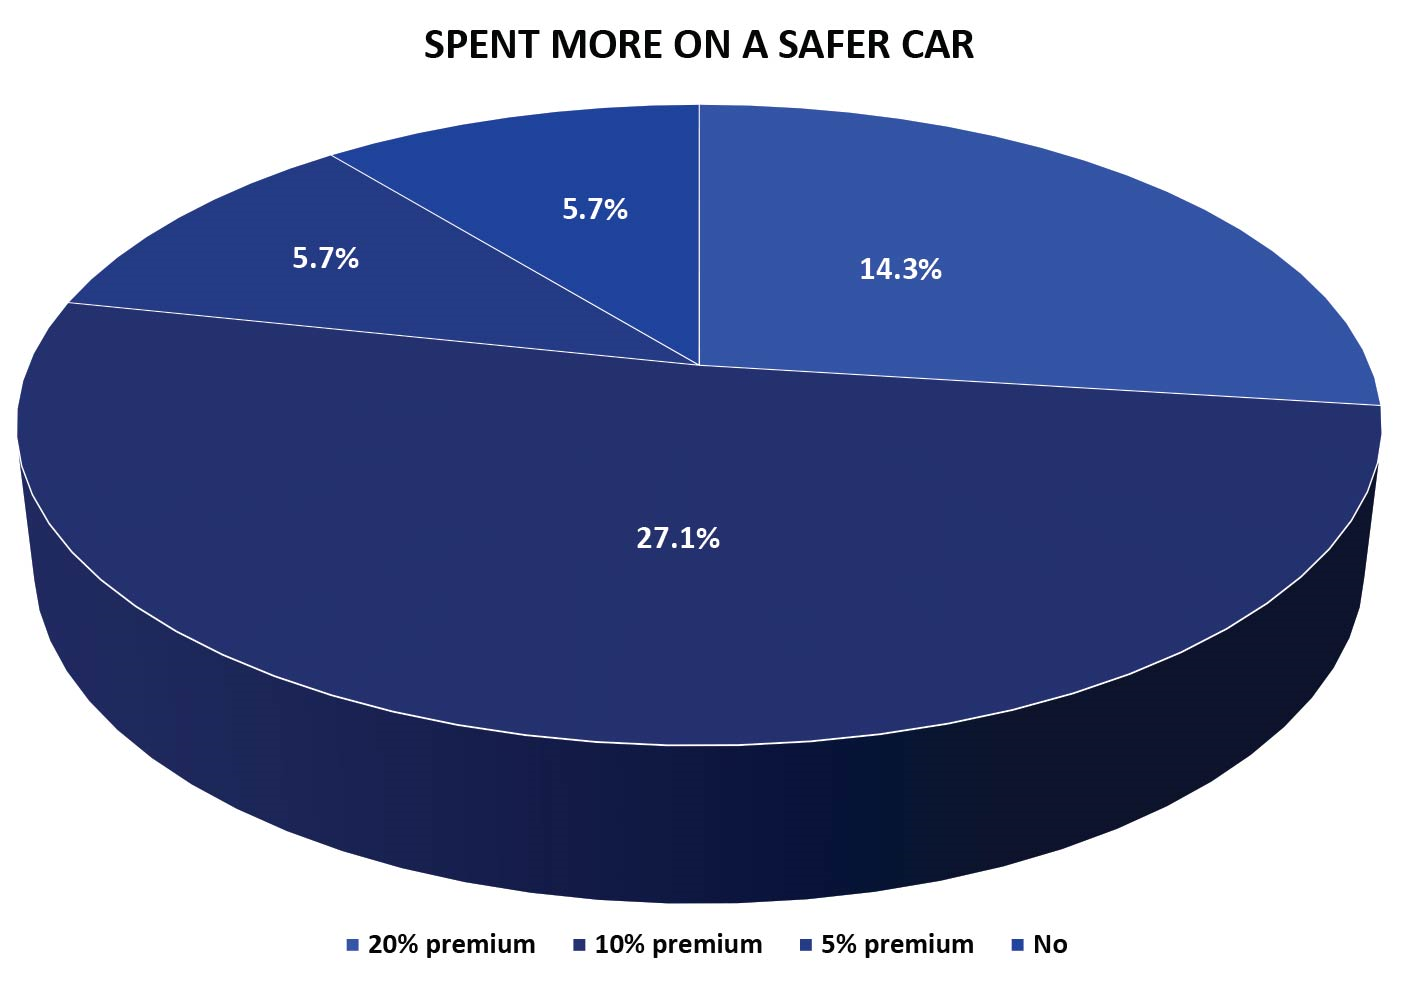 Spent More On a Safer Car